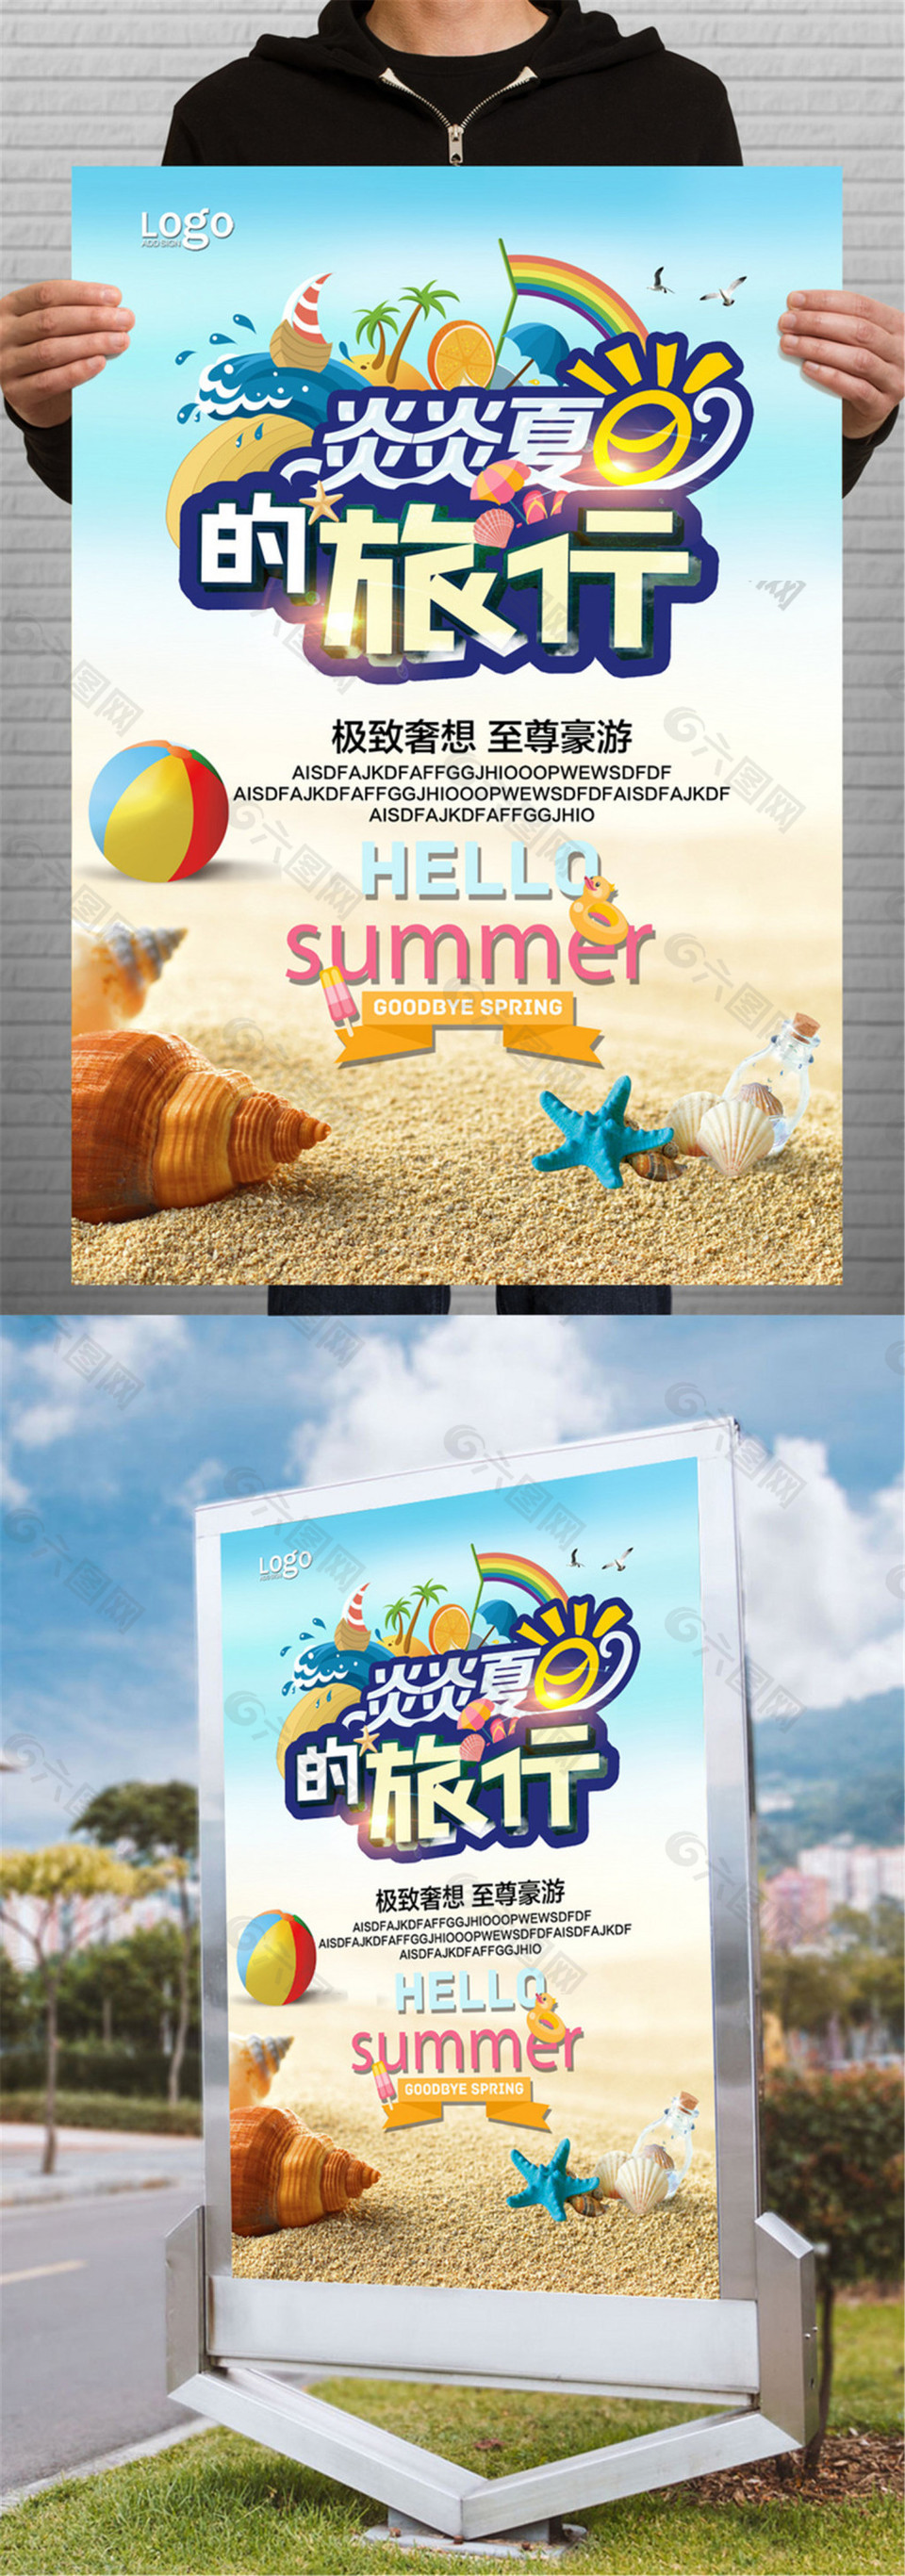 夏日旅行宣传海报